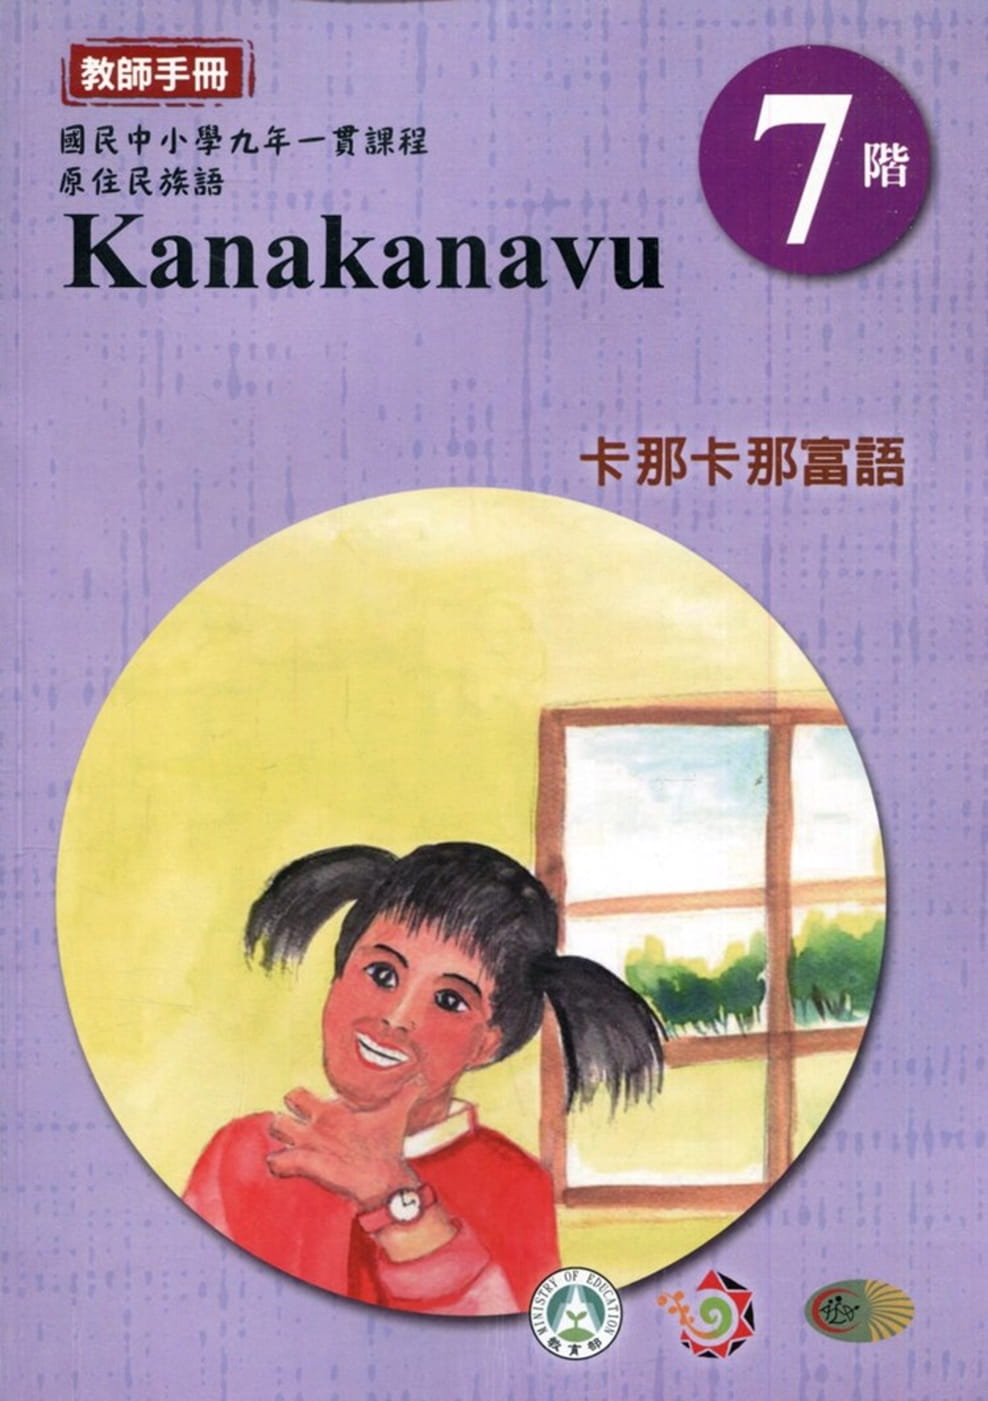 原住民族語卡那卡那富語第七階教師手冊2版